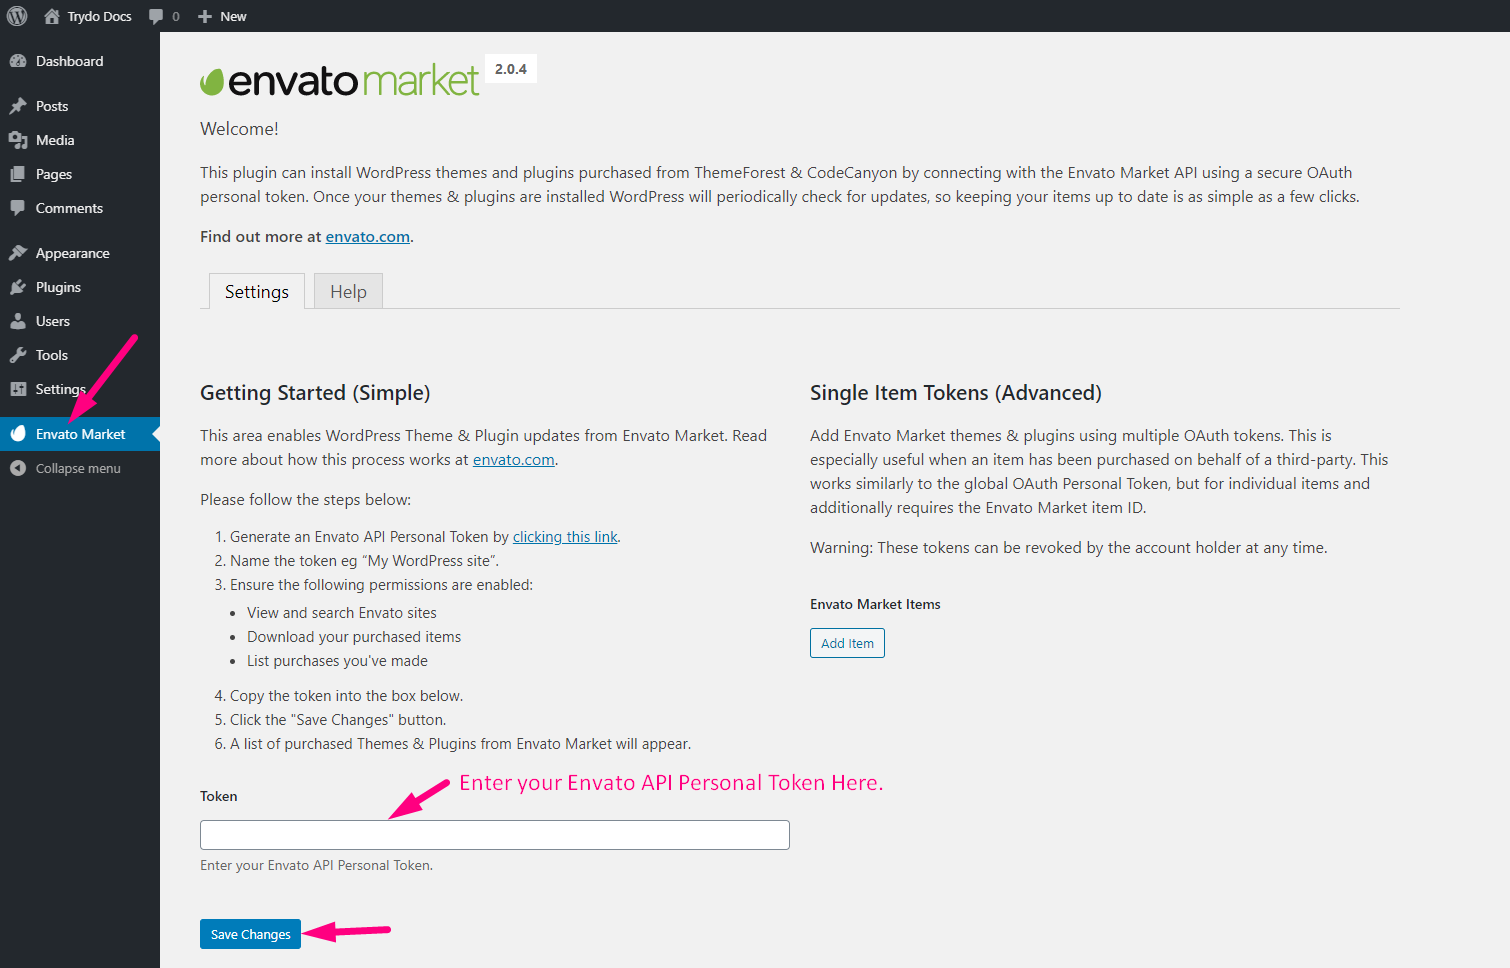 Enter your Envato API Personal Token.